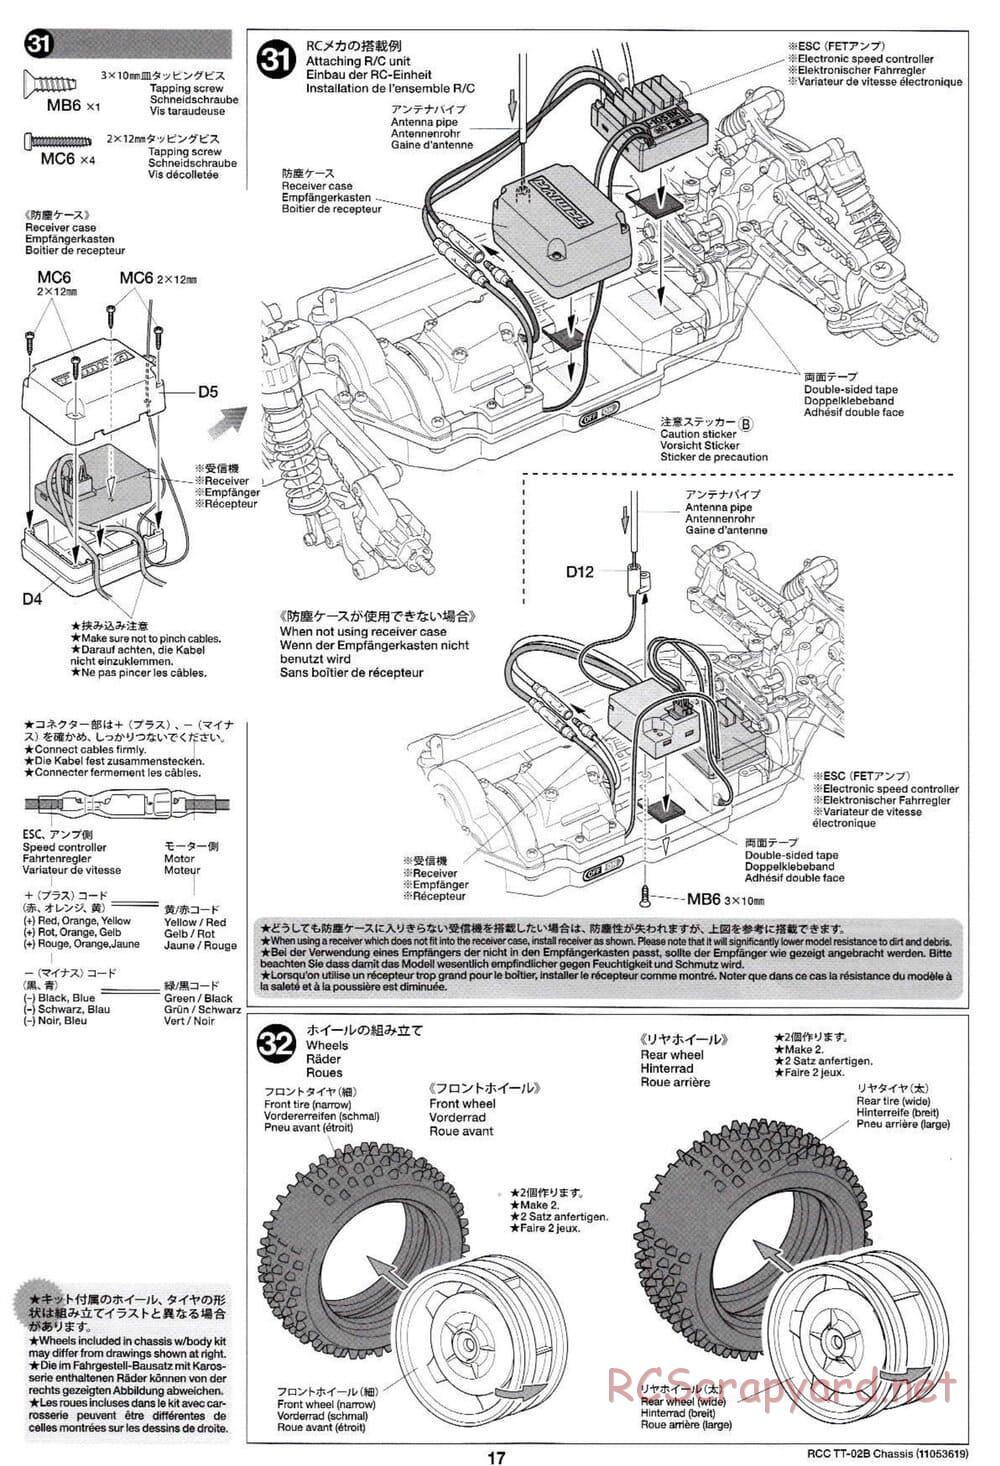 Tamiya - TT-02B Chassis - Manual - Page 21